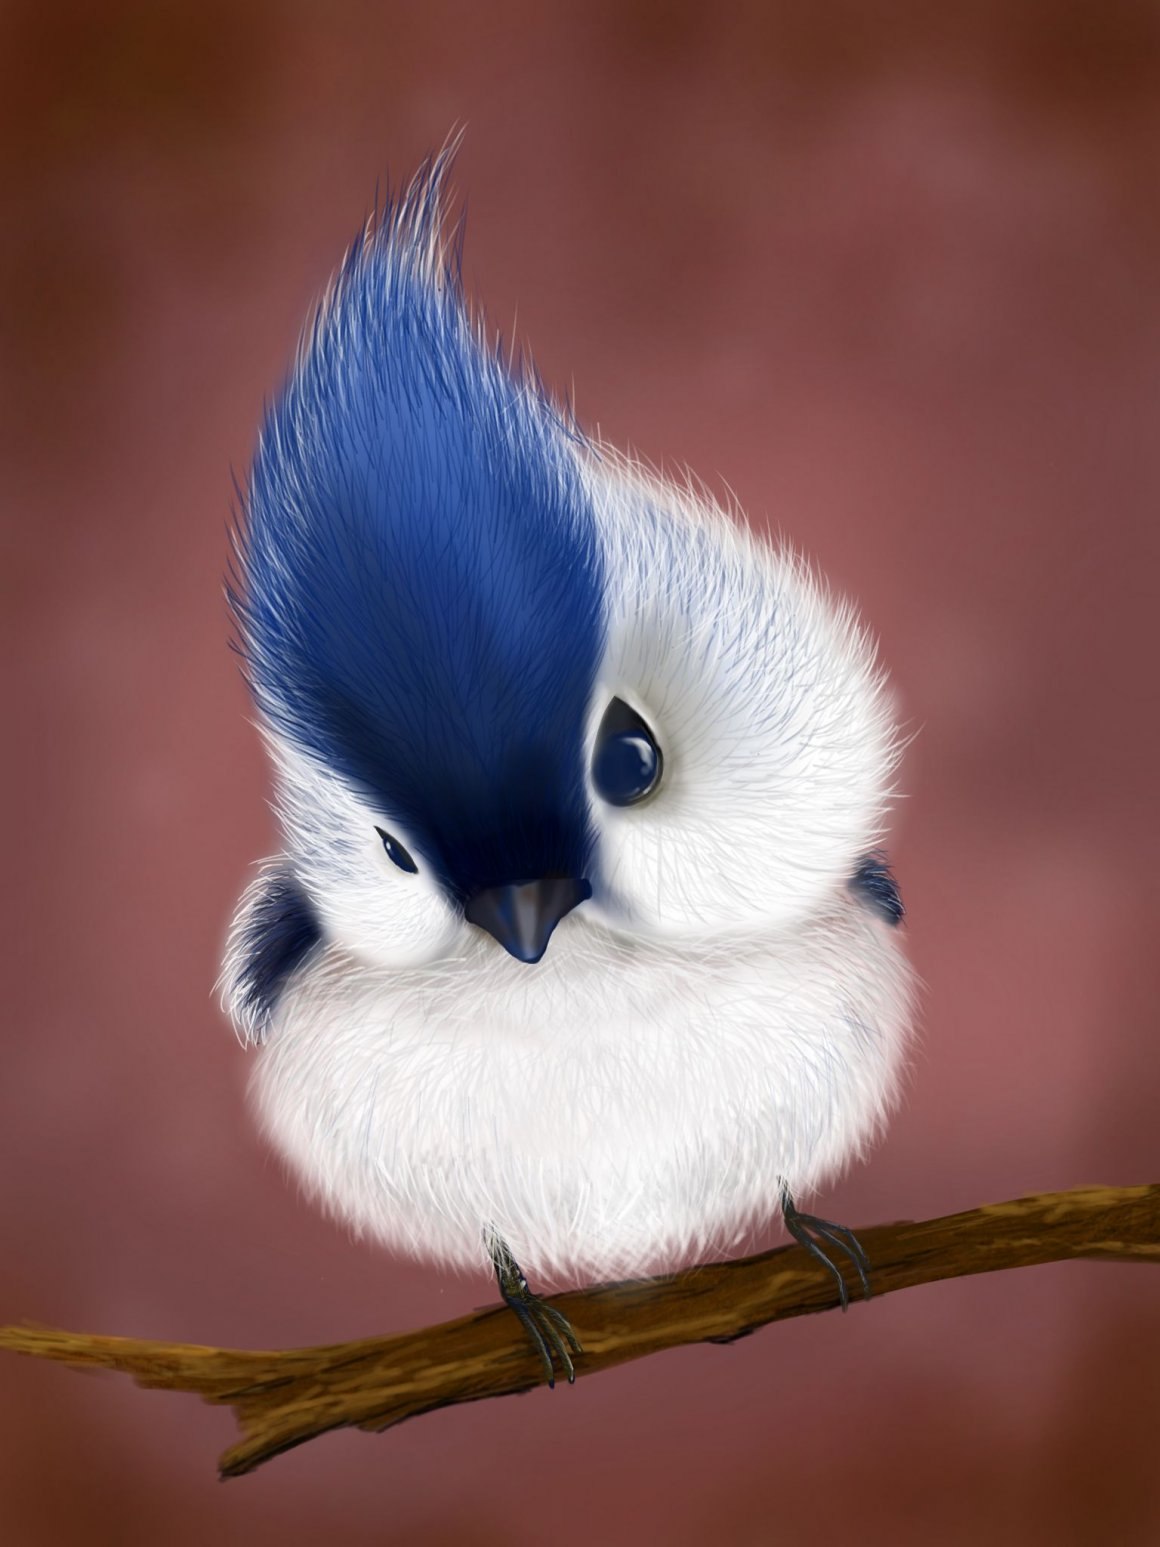 Милые птички - картинки и фото poknok.art